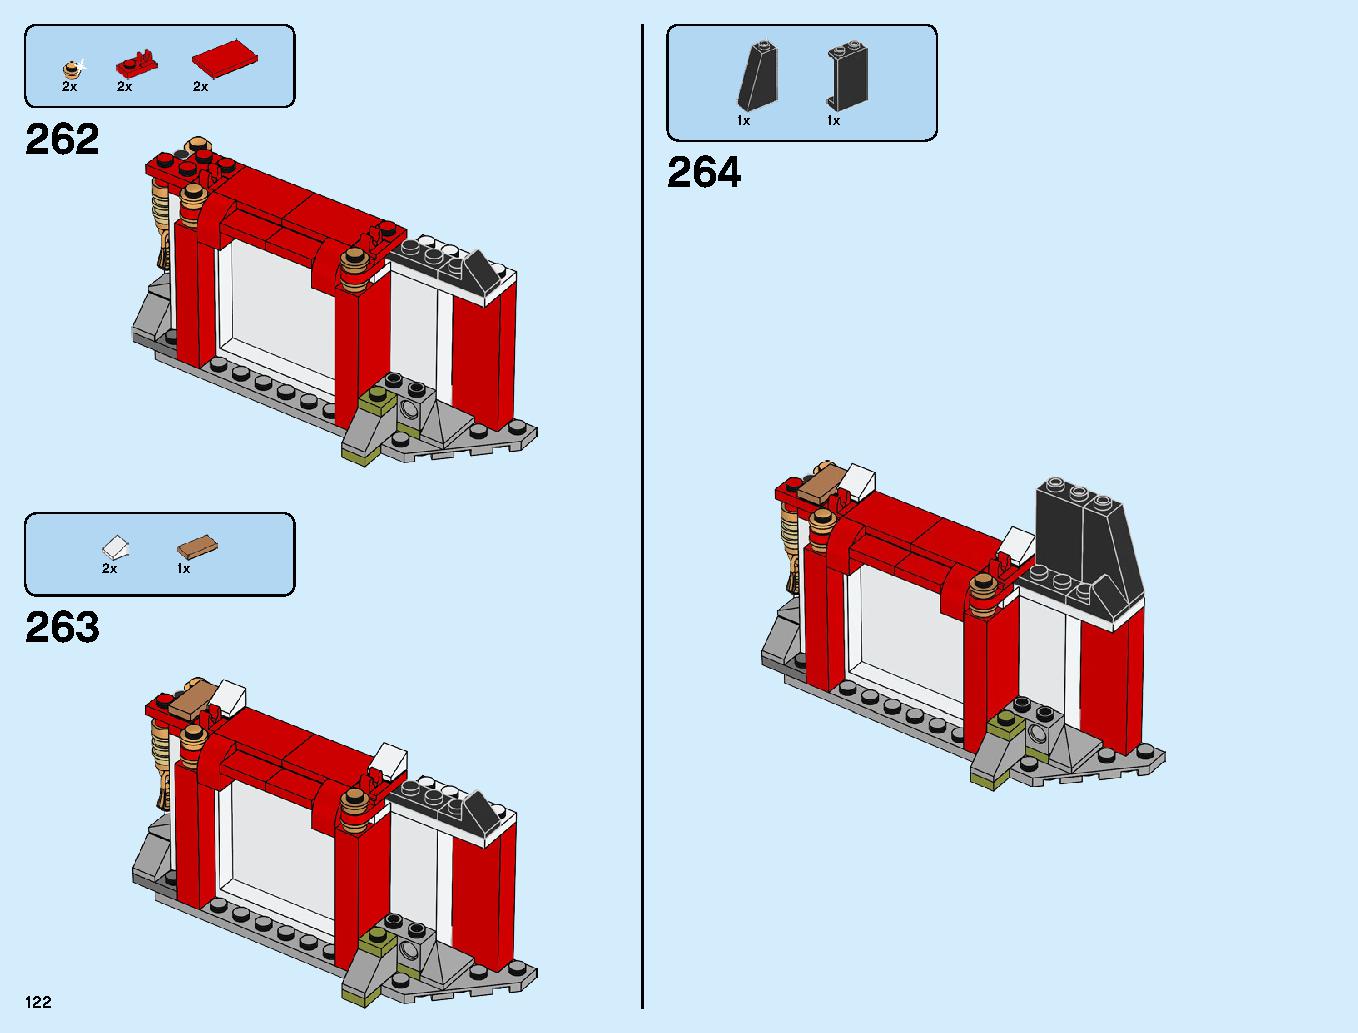 ニンジャ道場 70670 レゴの商品情報 レゴの説明書・組立方法 122 page